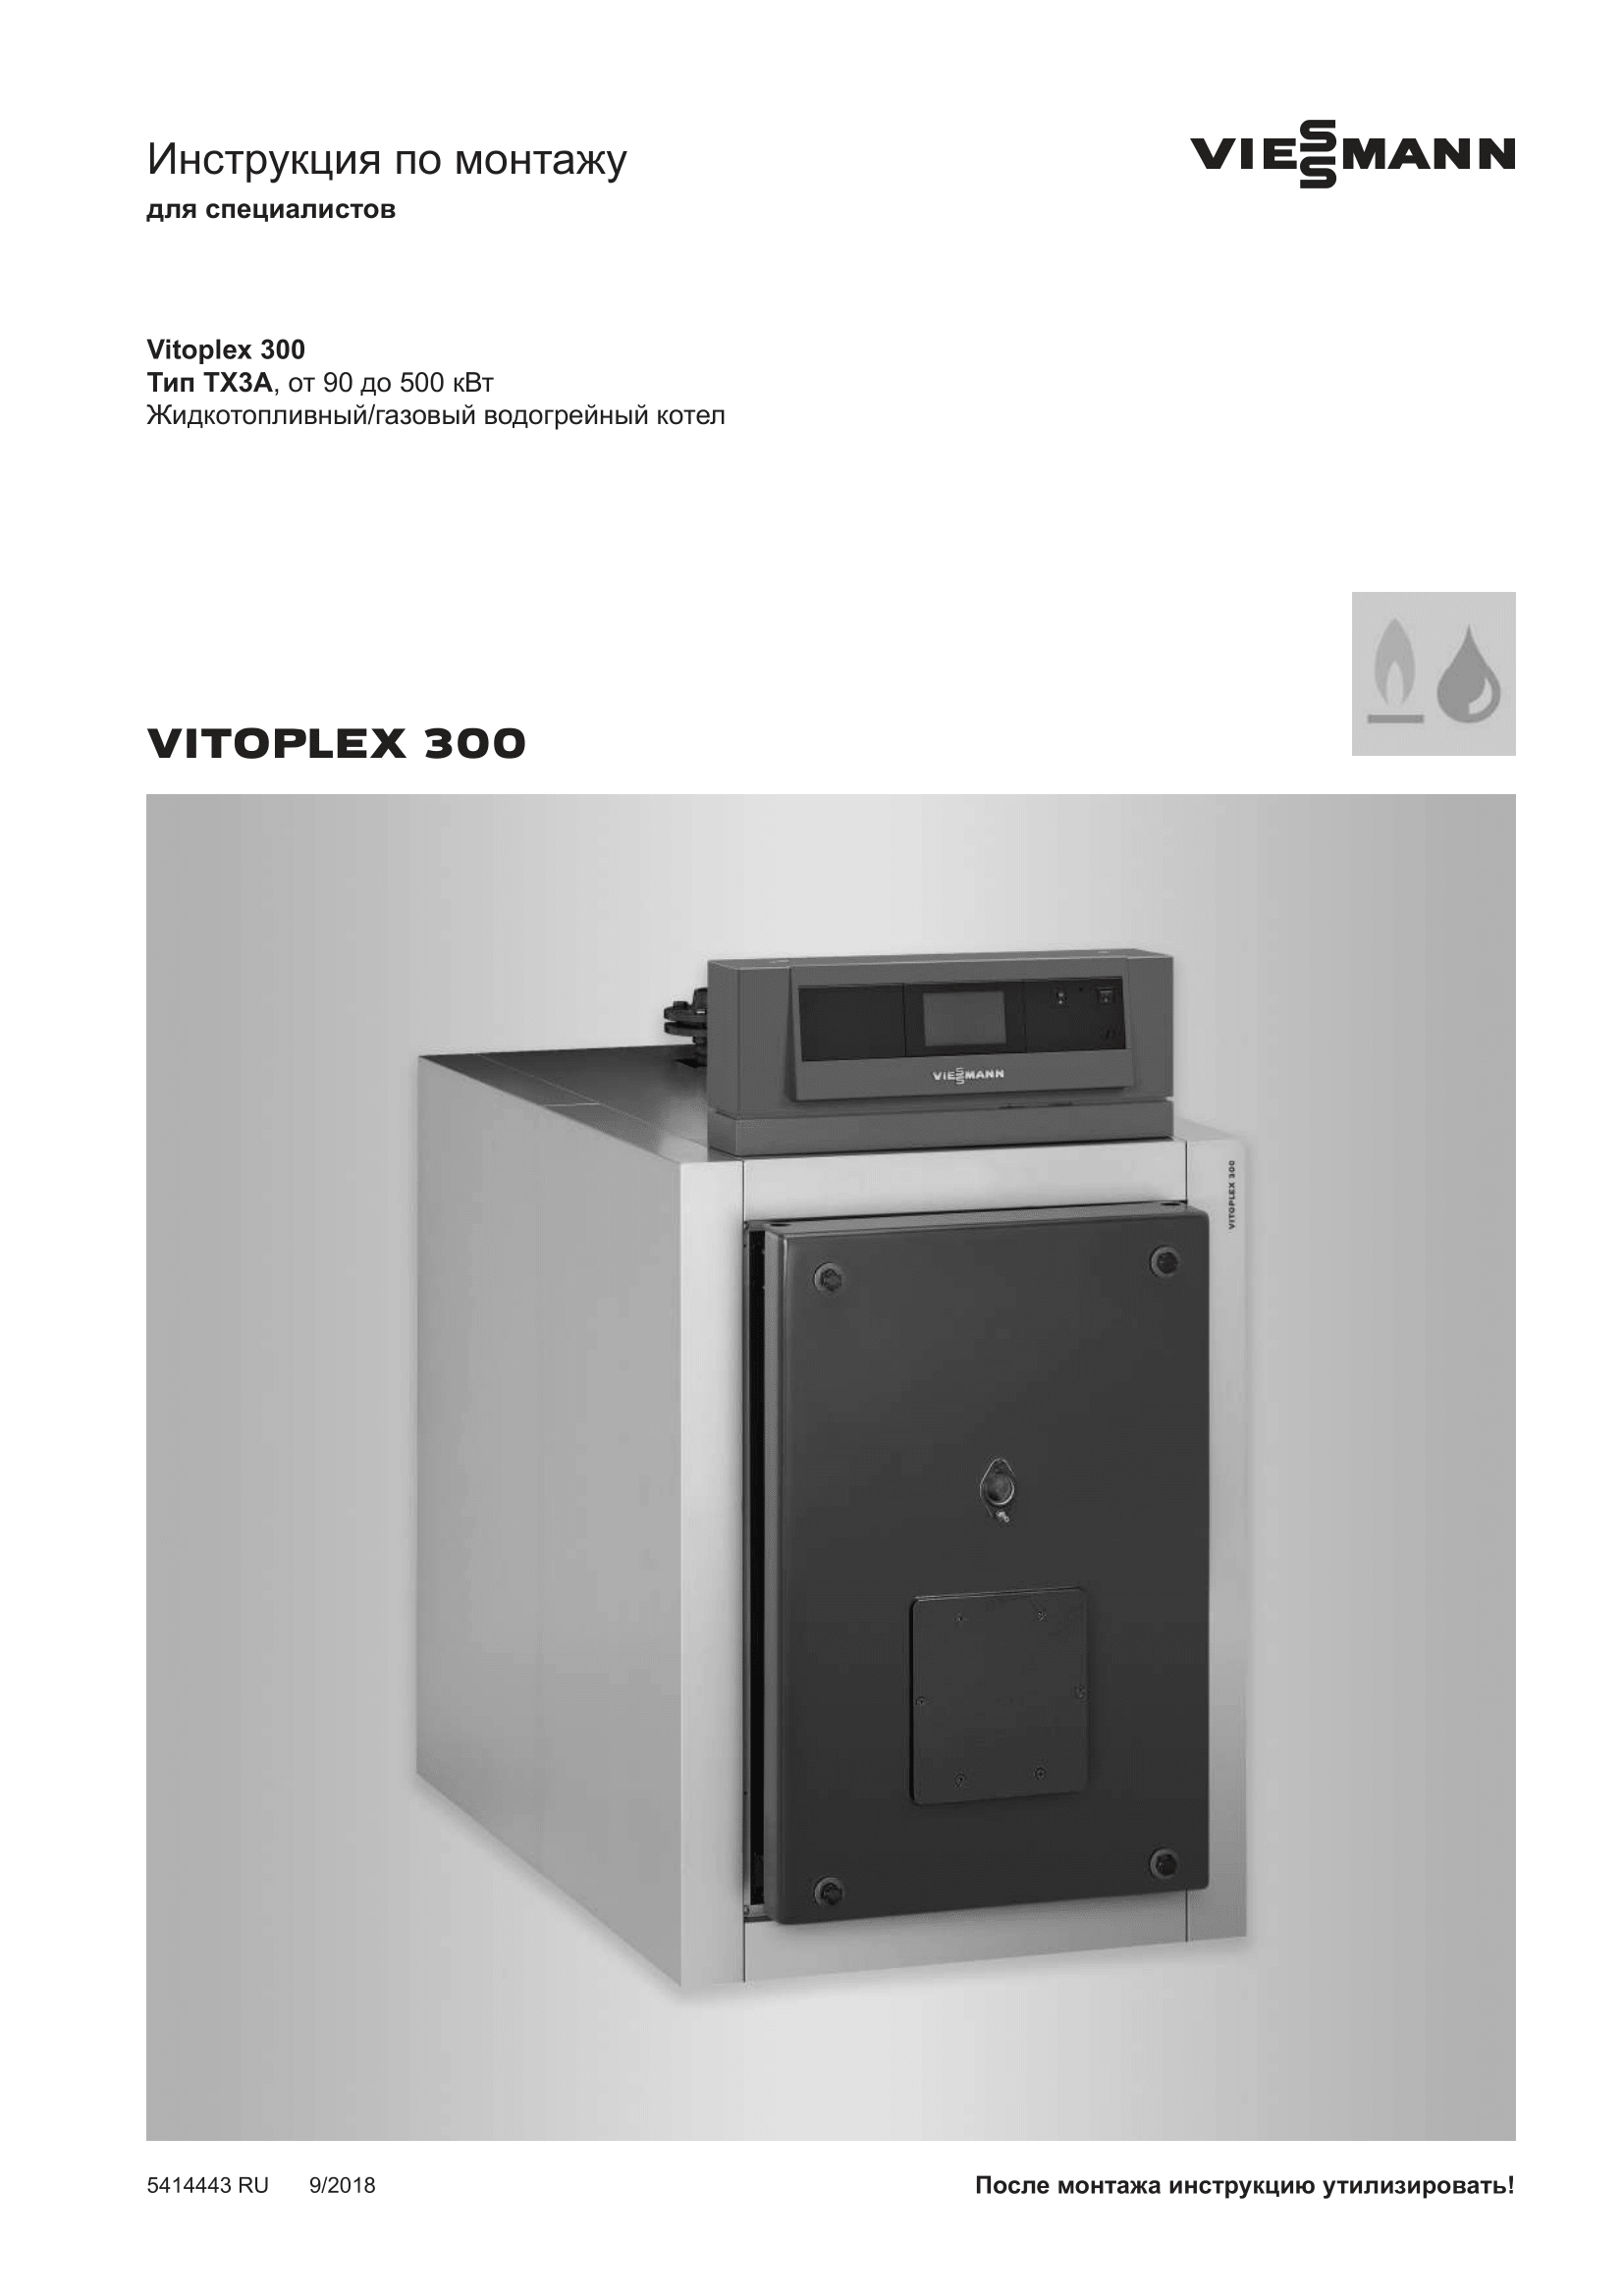 Фотография Инструкция по монтажу для комбинированного котла (дизель/газ) Vitoplex 300 от 90 до 500 кВт